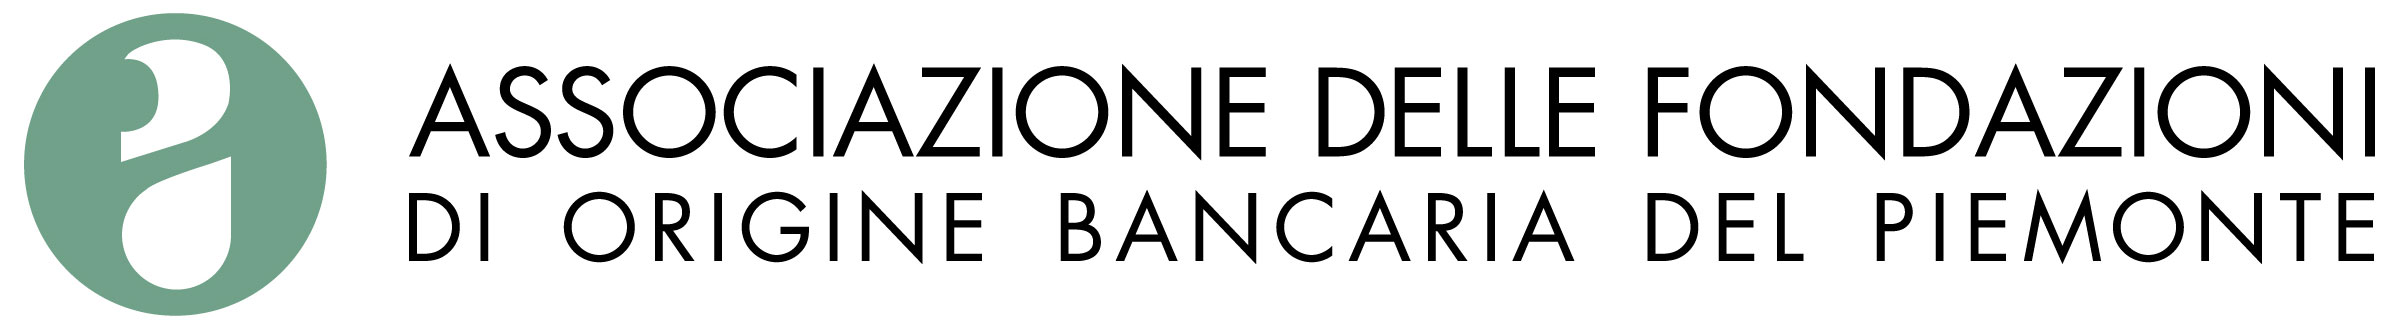 Associazione delle Fondazioni di origine bancaria del Piemonte